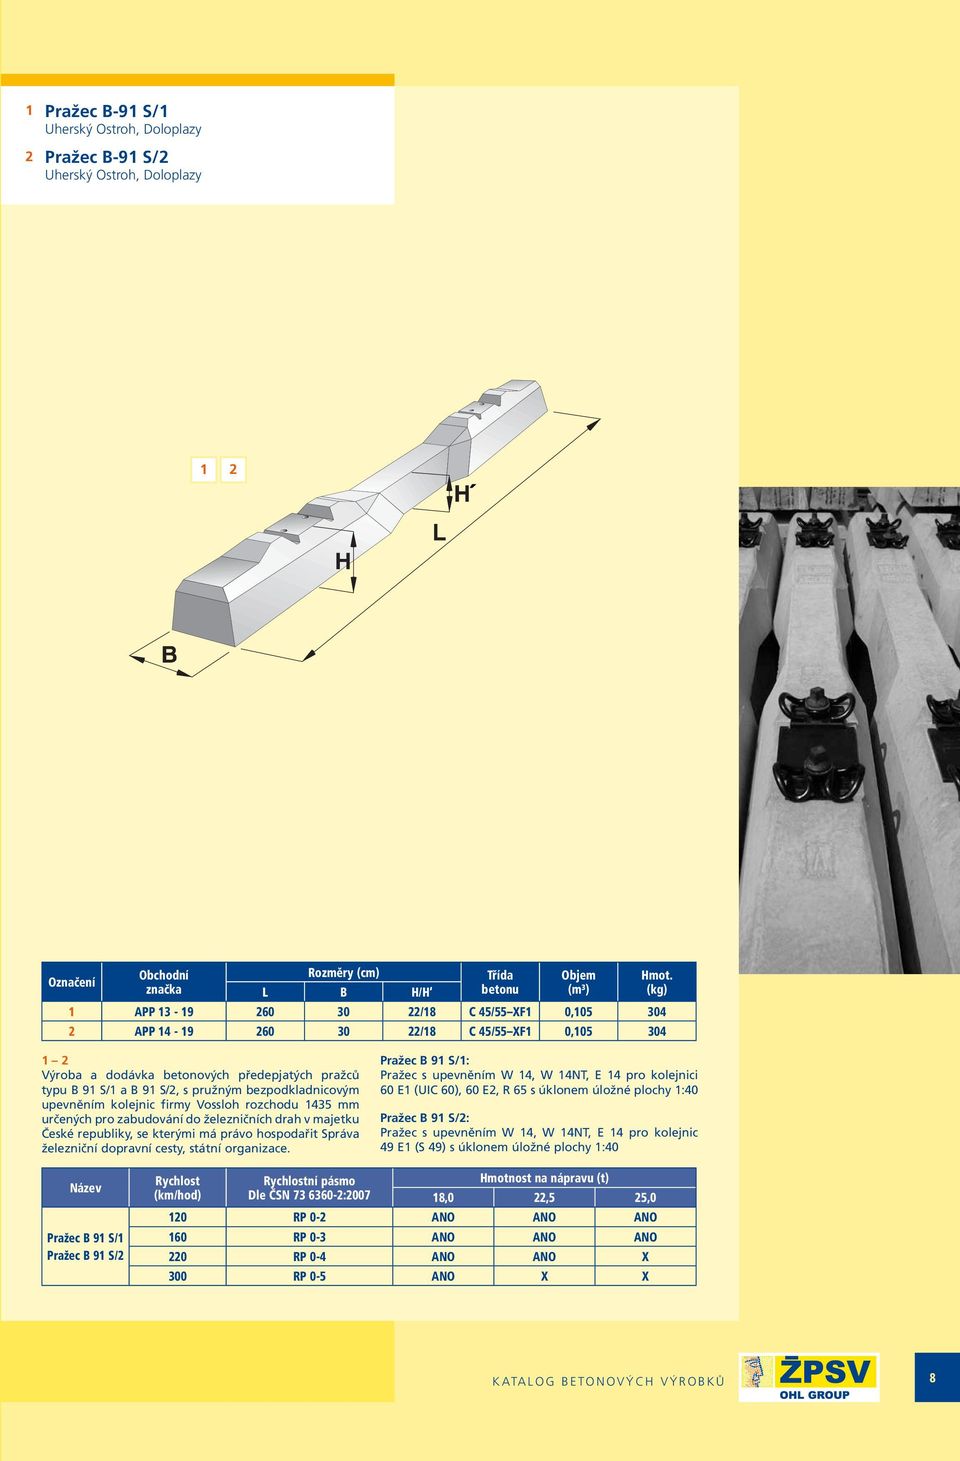 bezpodkladnicovým upevněním kolejnic firmy Vossloh rozchodu 435 mm určených pro zabudování do železničních drah v majetku České republiky, se kterými má právo hospodařit Správa železniční dopravní